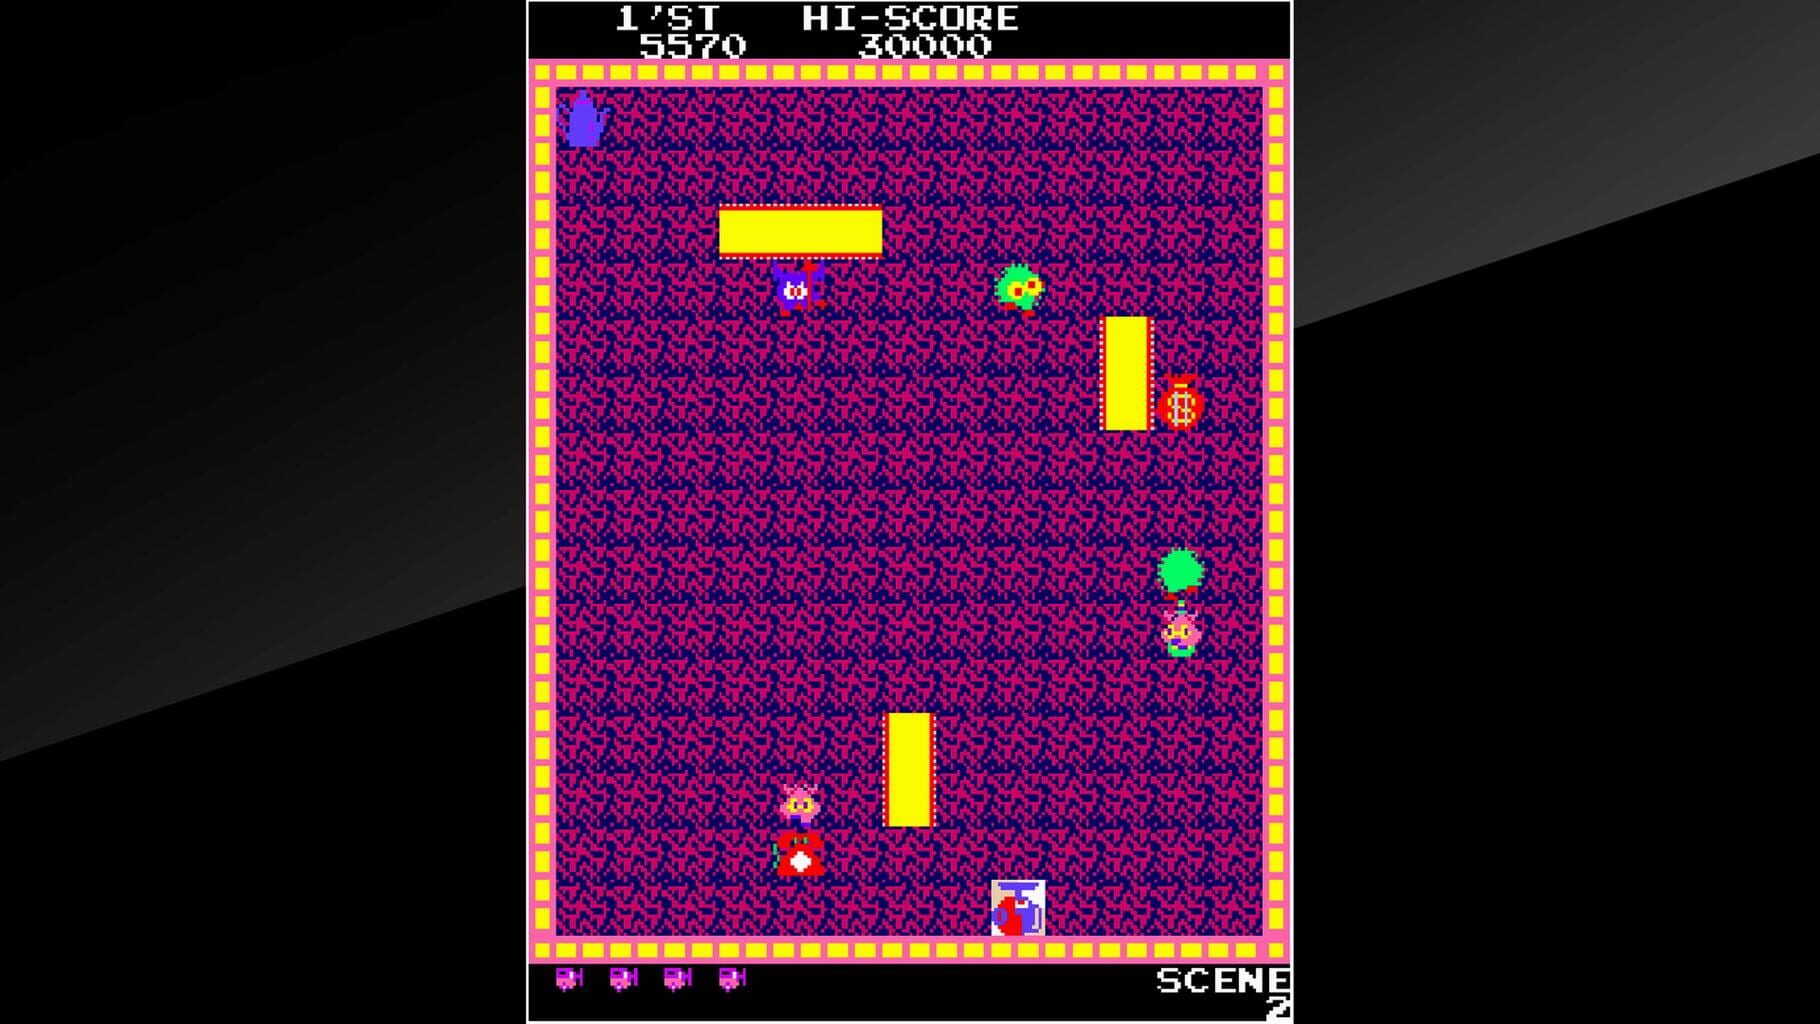 Captura de pantalla - Arcade Archives: Rug Rats